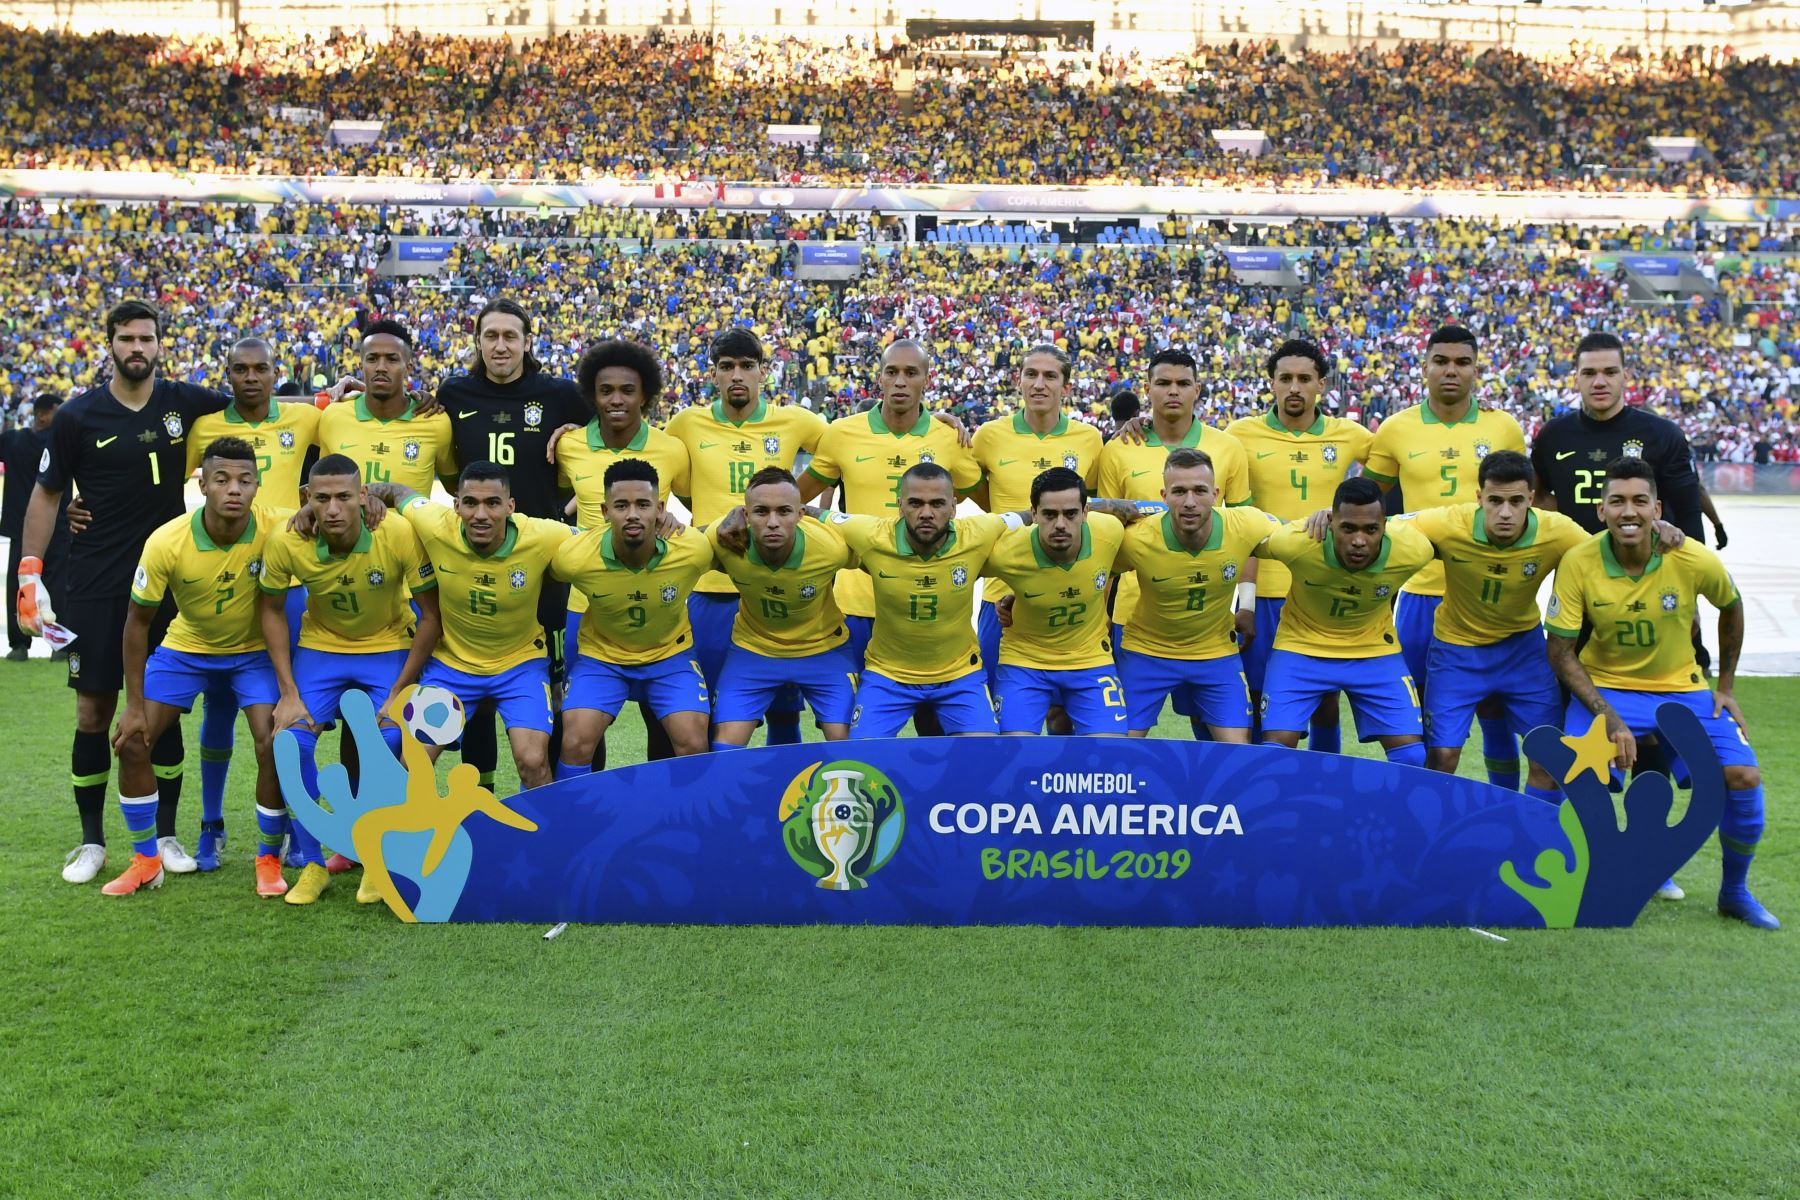 Los jugadores de Brasil posan para las fotos antes de la final del torneo de fútbol de la Copa América contra Perú en el Estadio Maracaná de Río de Janeiro, Brasil.
Foto: AFP